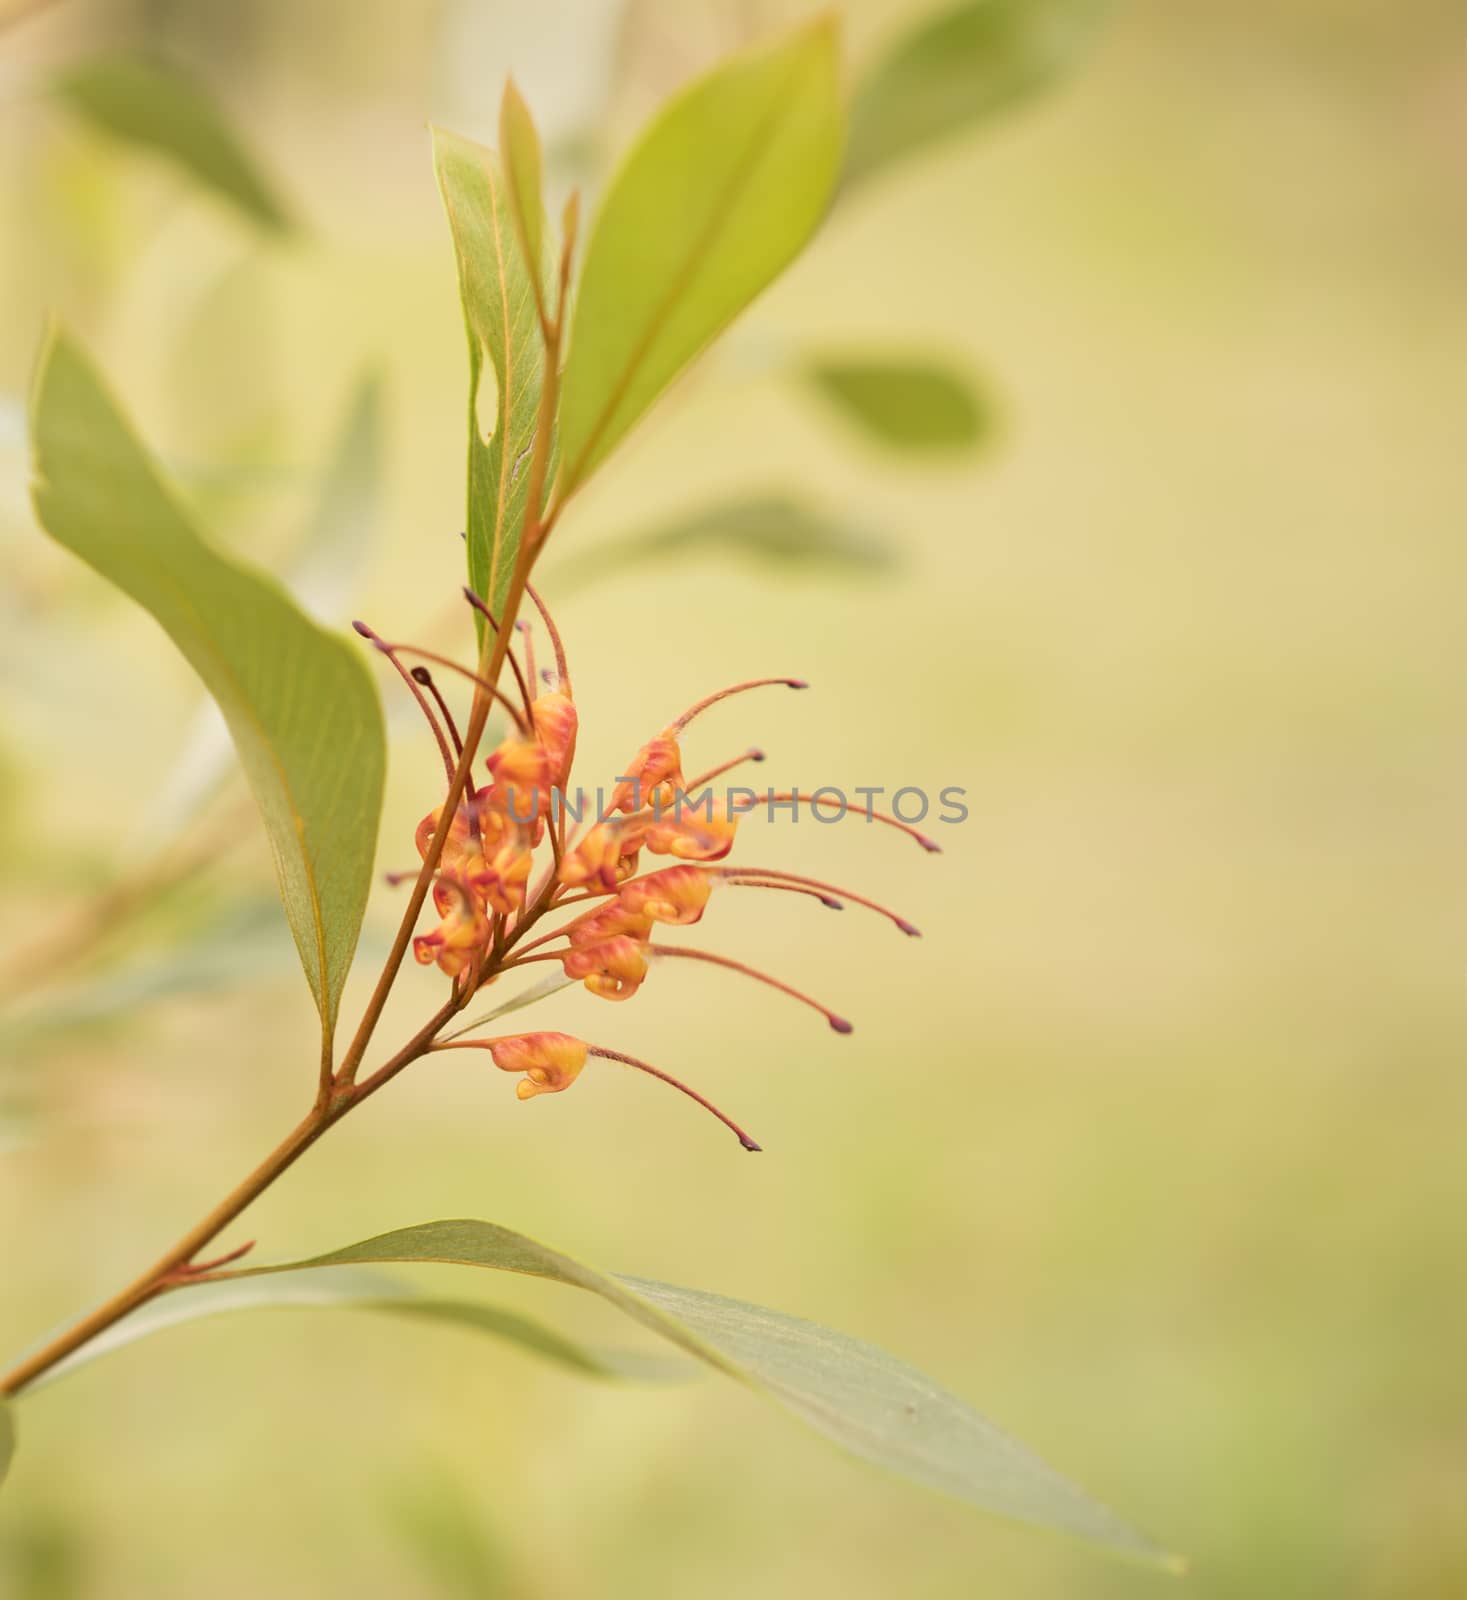 Australian native wildflower Grevillea spider flower by sherj